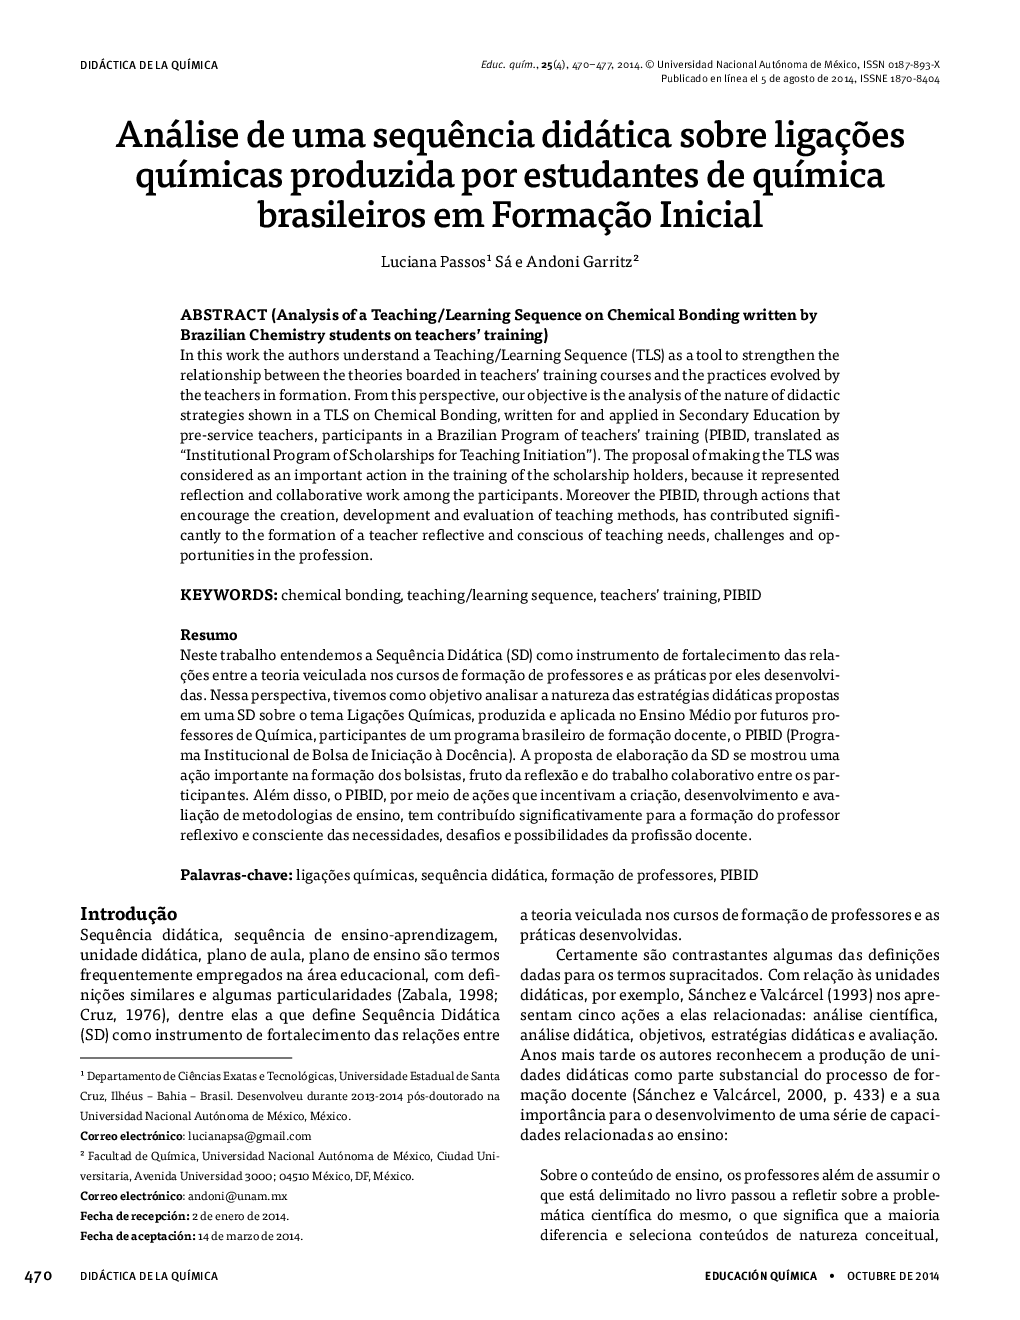 Análise de uma sequência didática sobre ligações químicas produzida por estudantes de química brasileiros em Formação Inicial